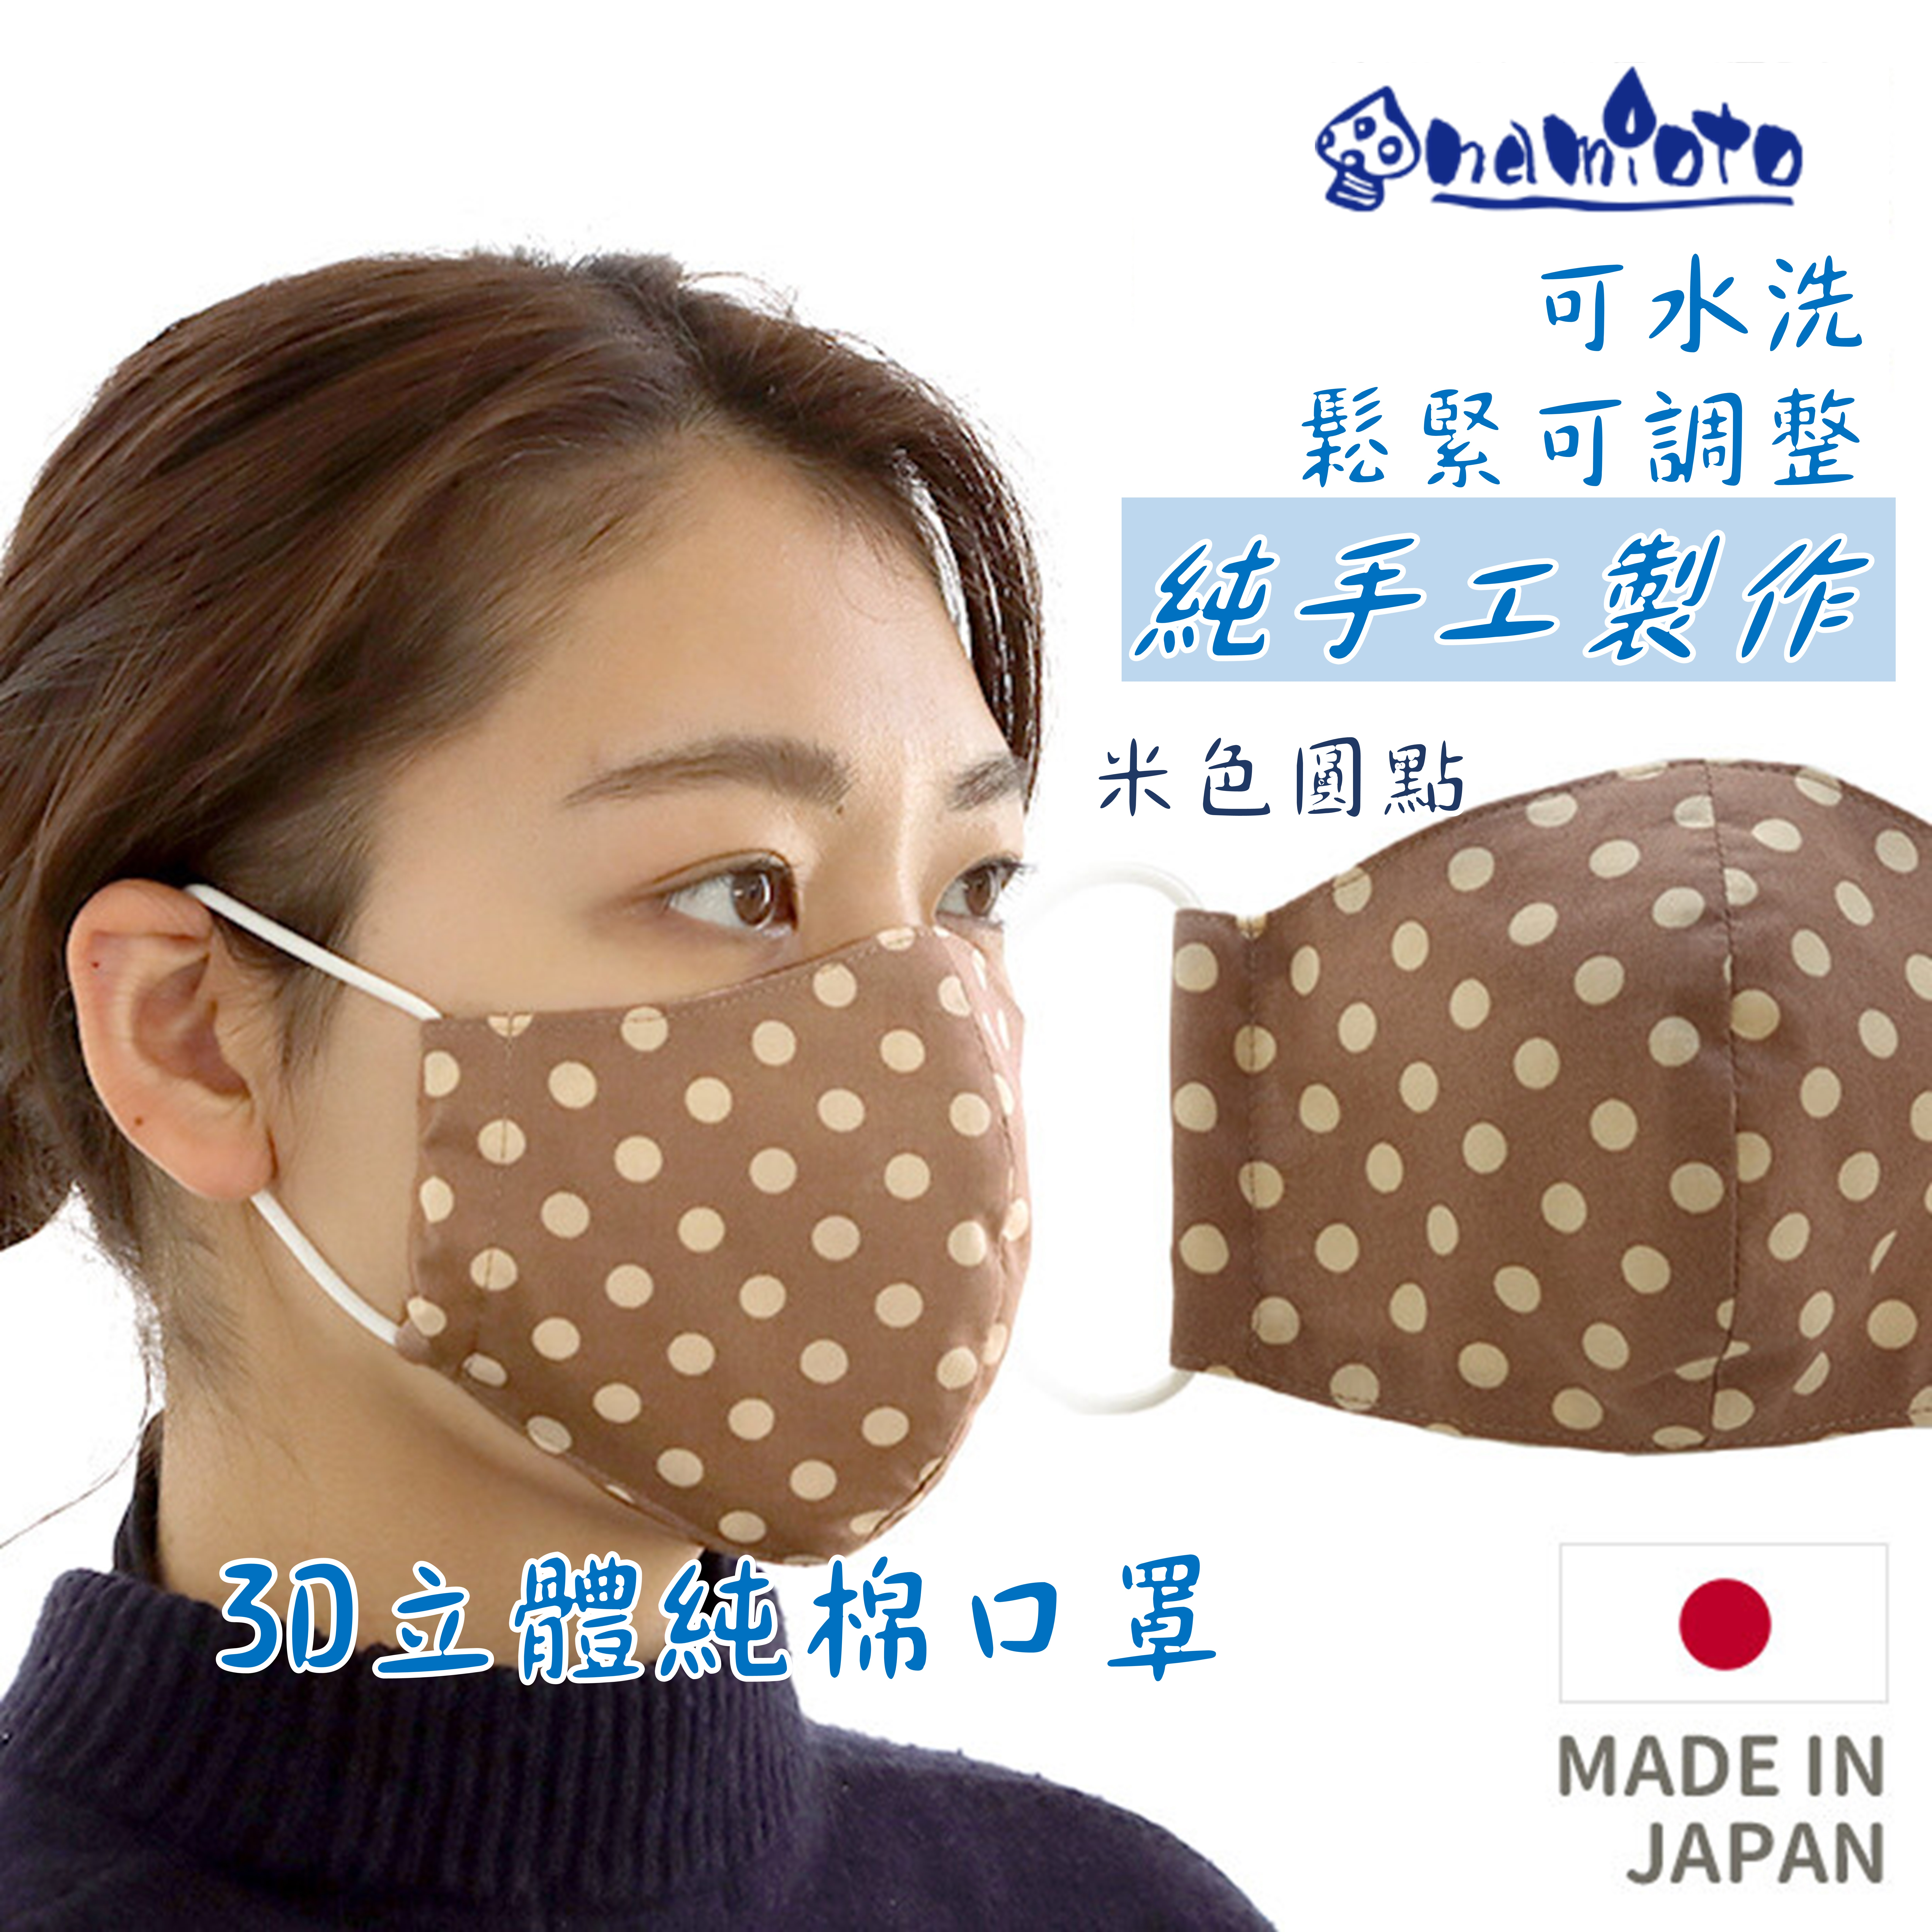 日本 namioto 純手工純棉雙層口罩 3D 立體口罩 女性米色圓點 防曬高透氣 口罩